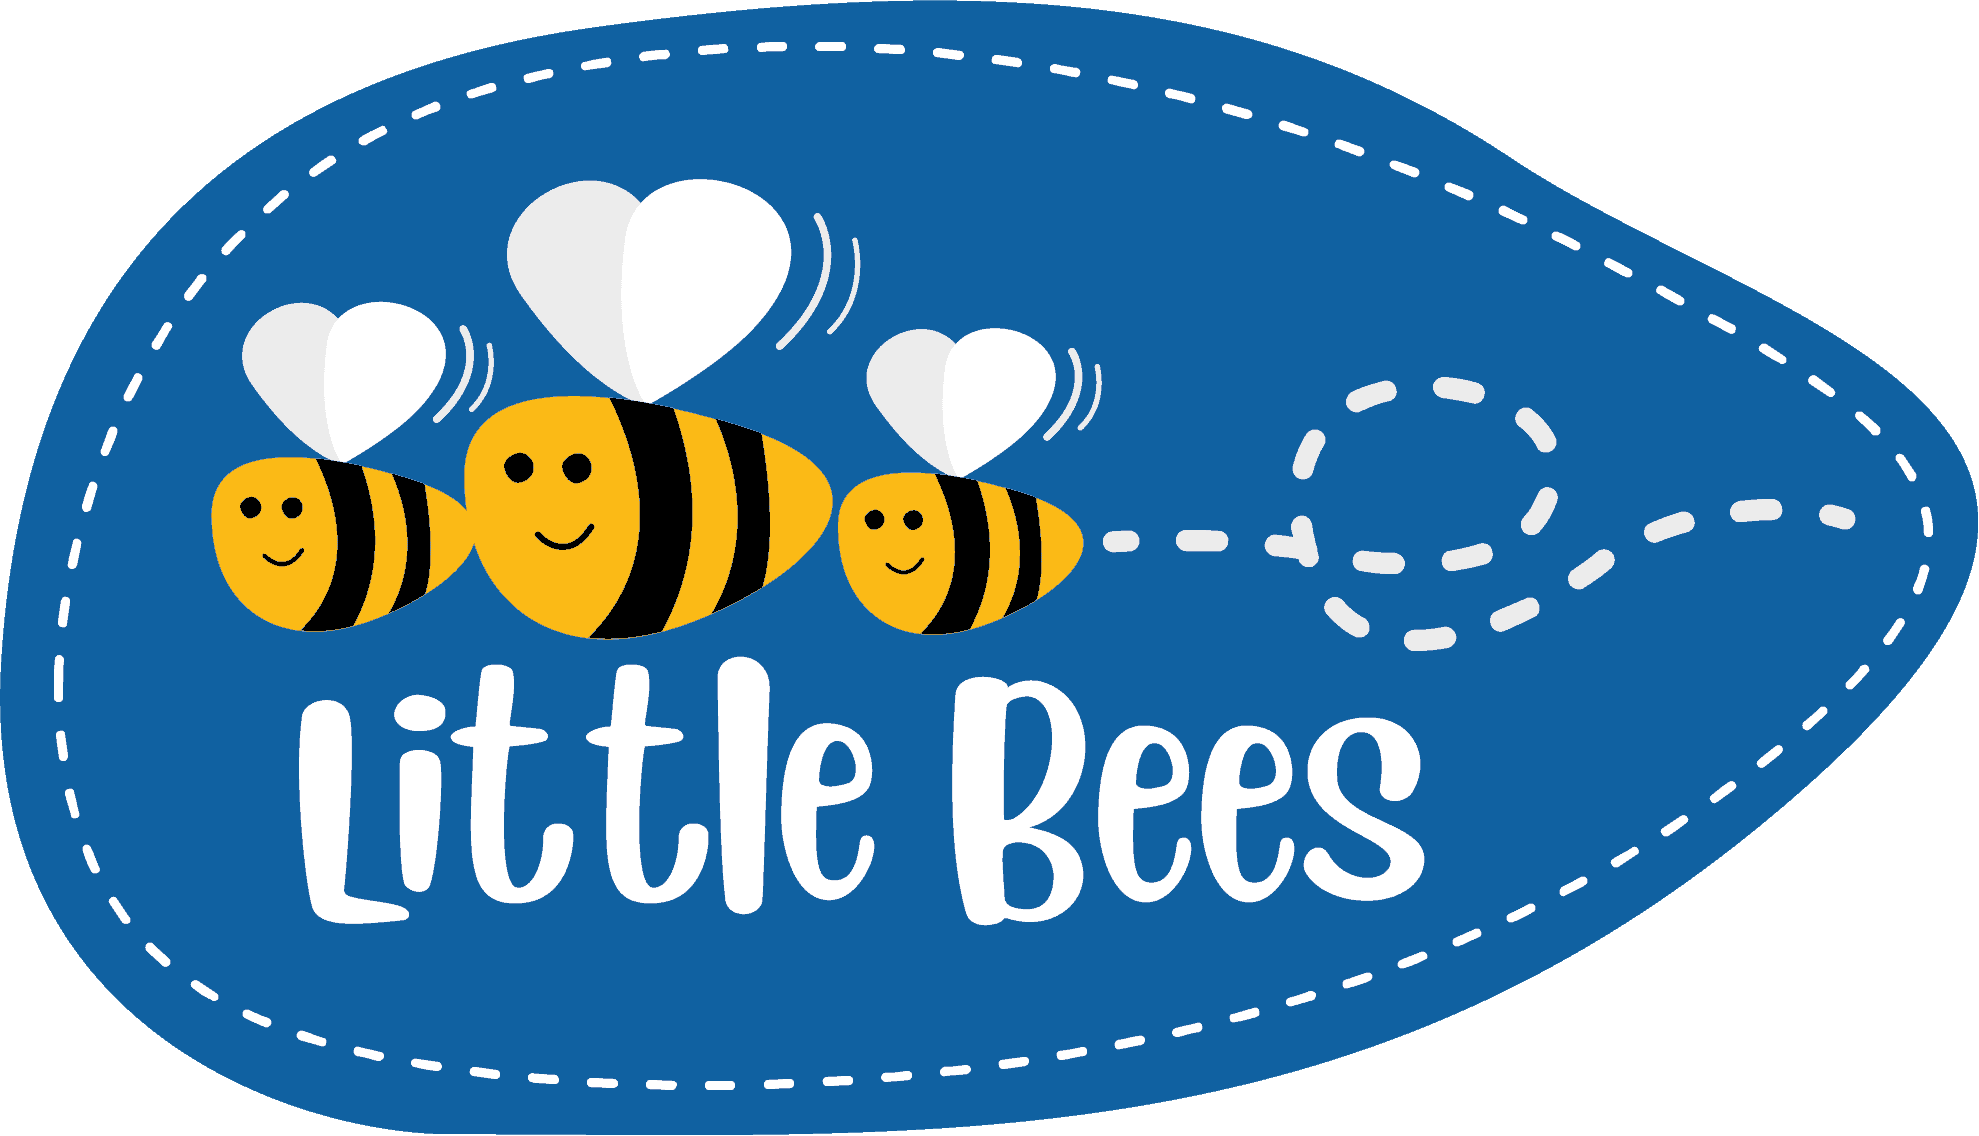 Little Bee logo 3